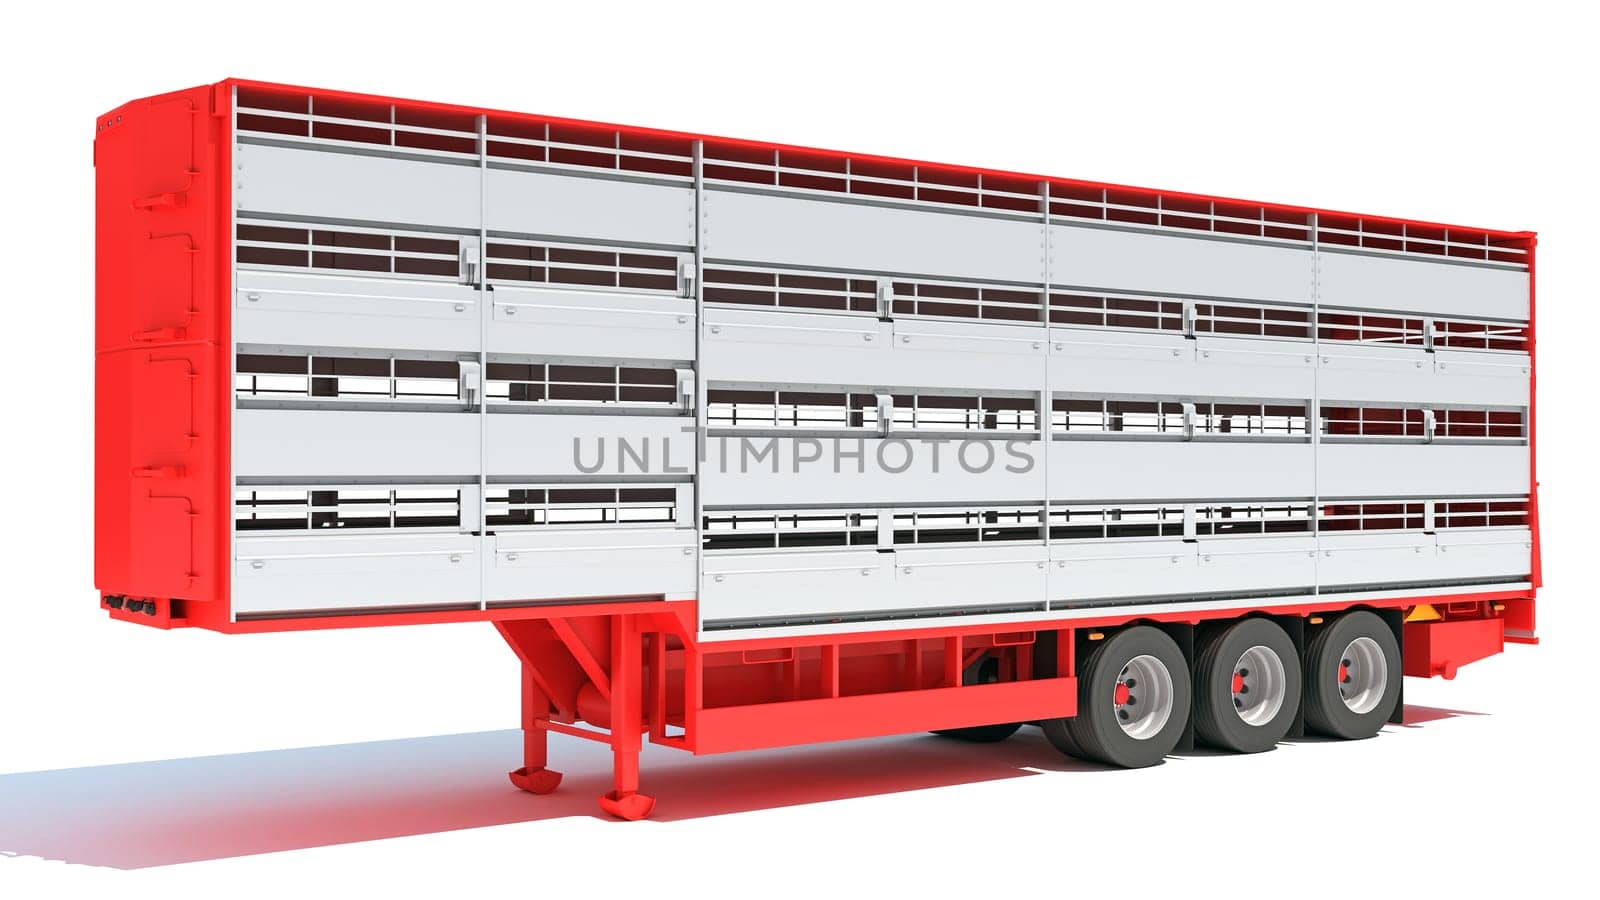 Cattle Animal Transporter semi trailer 3D rendering model on white background